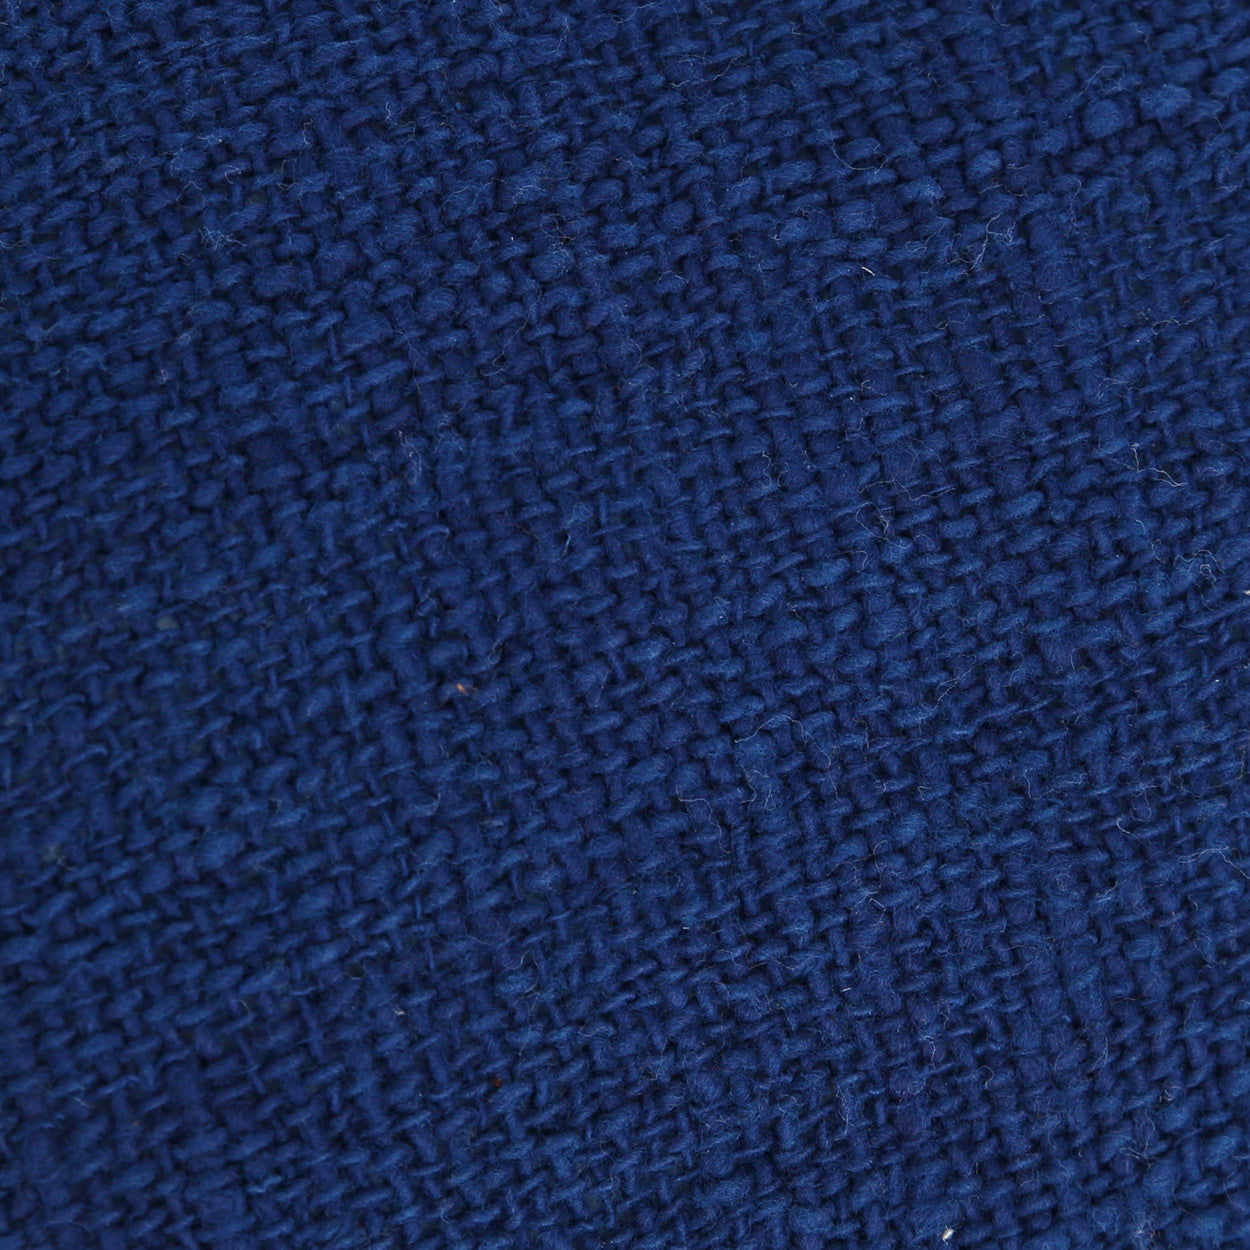 Housse de coussin bleue à frange - SAINT-TROPEZMaison Bloom Concept 